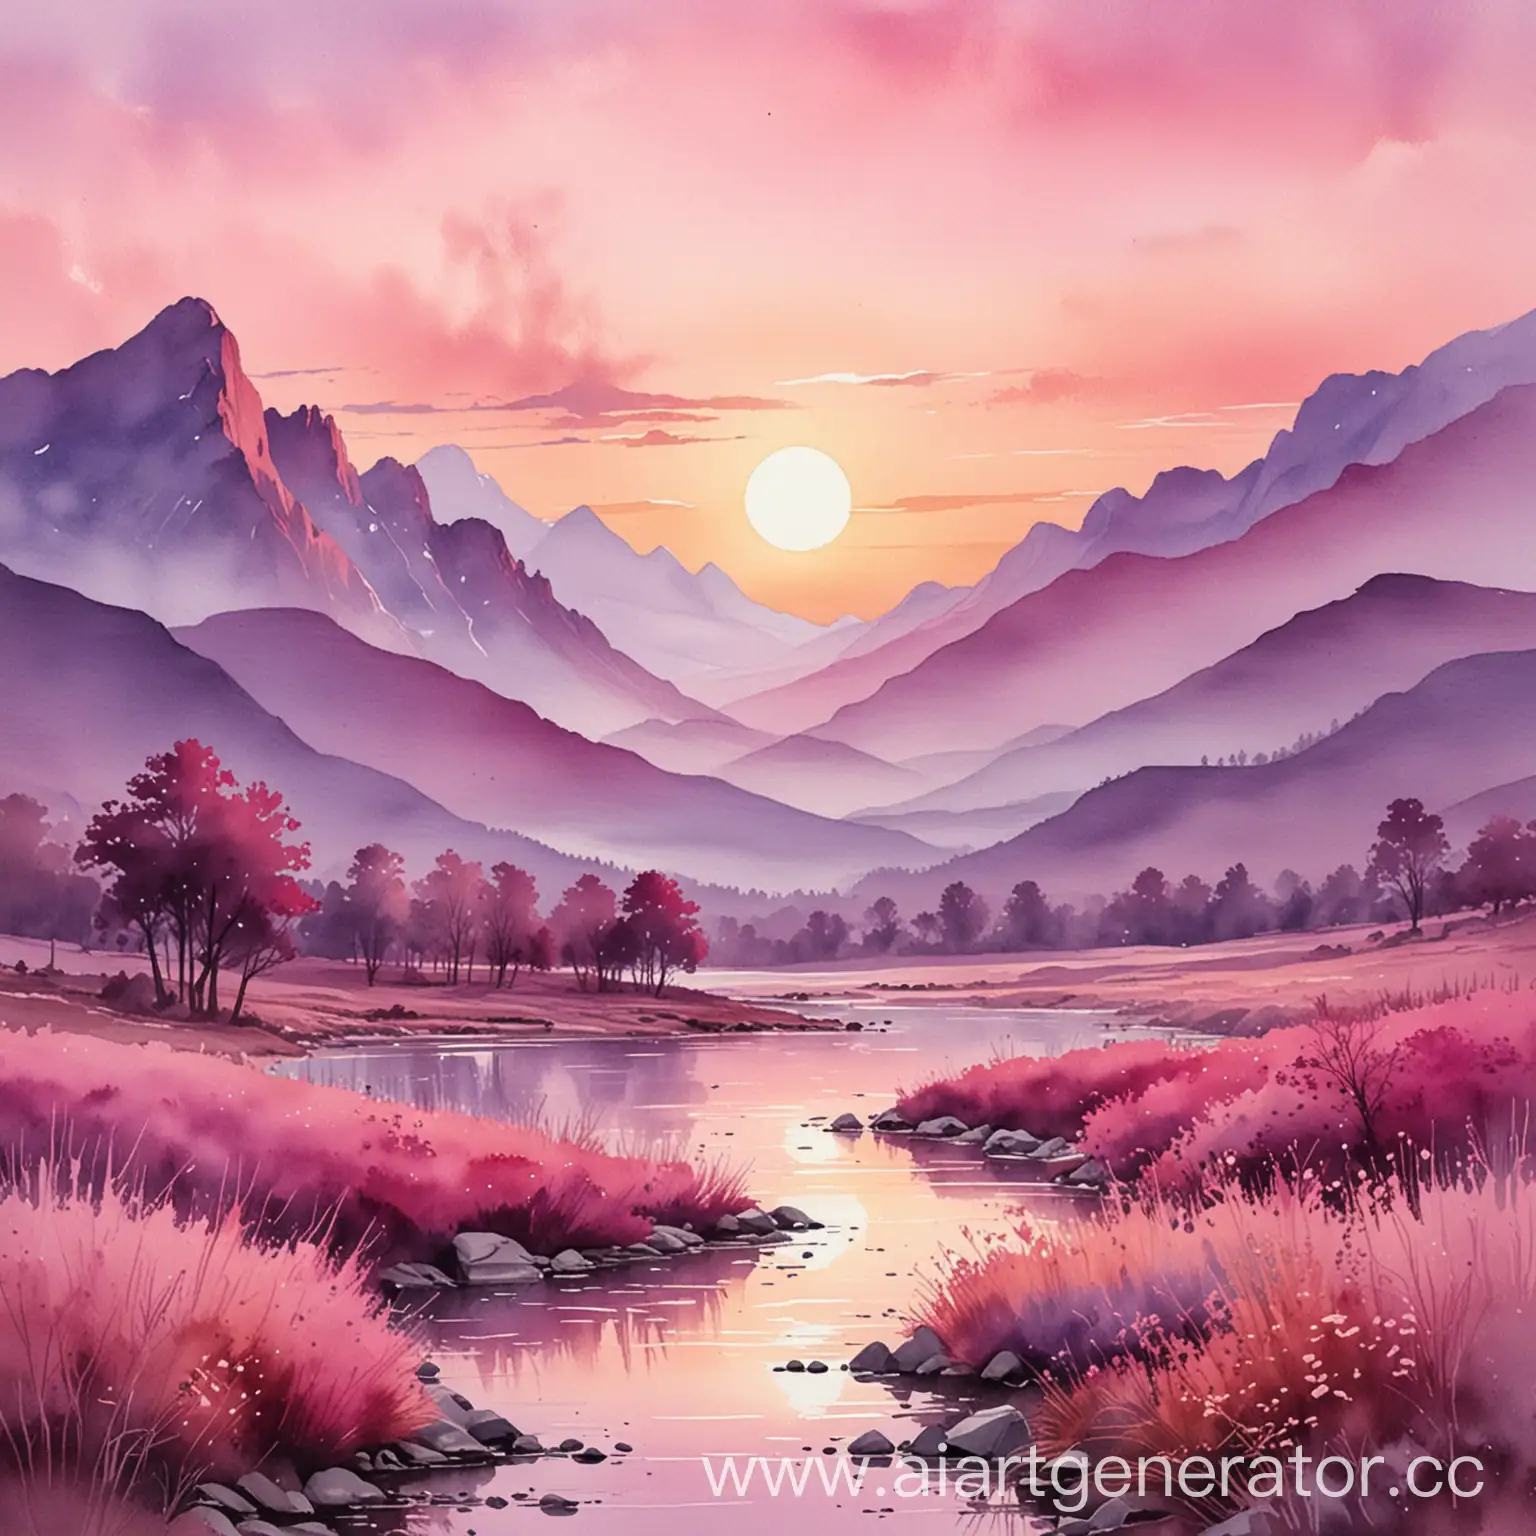 акварельный пейзаж в розово-сиреневых тонах с горами, садящимся солнцем